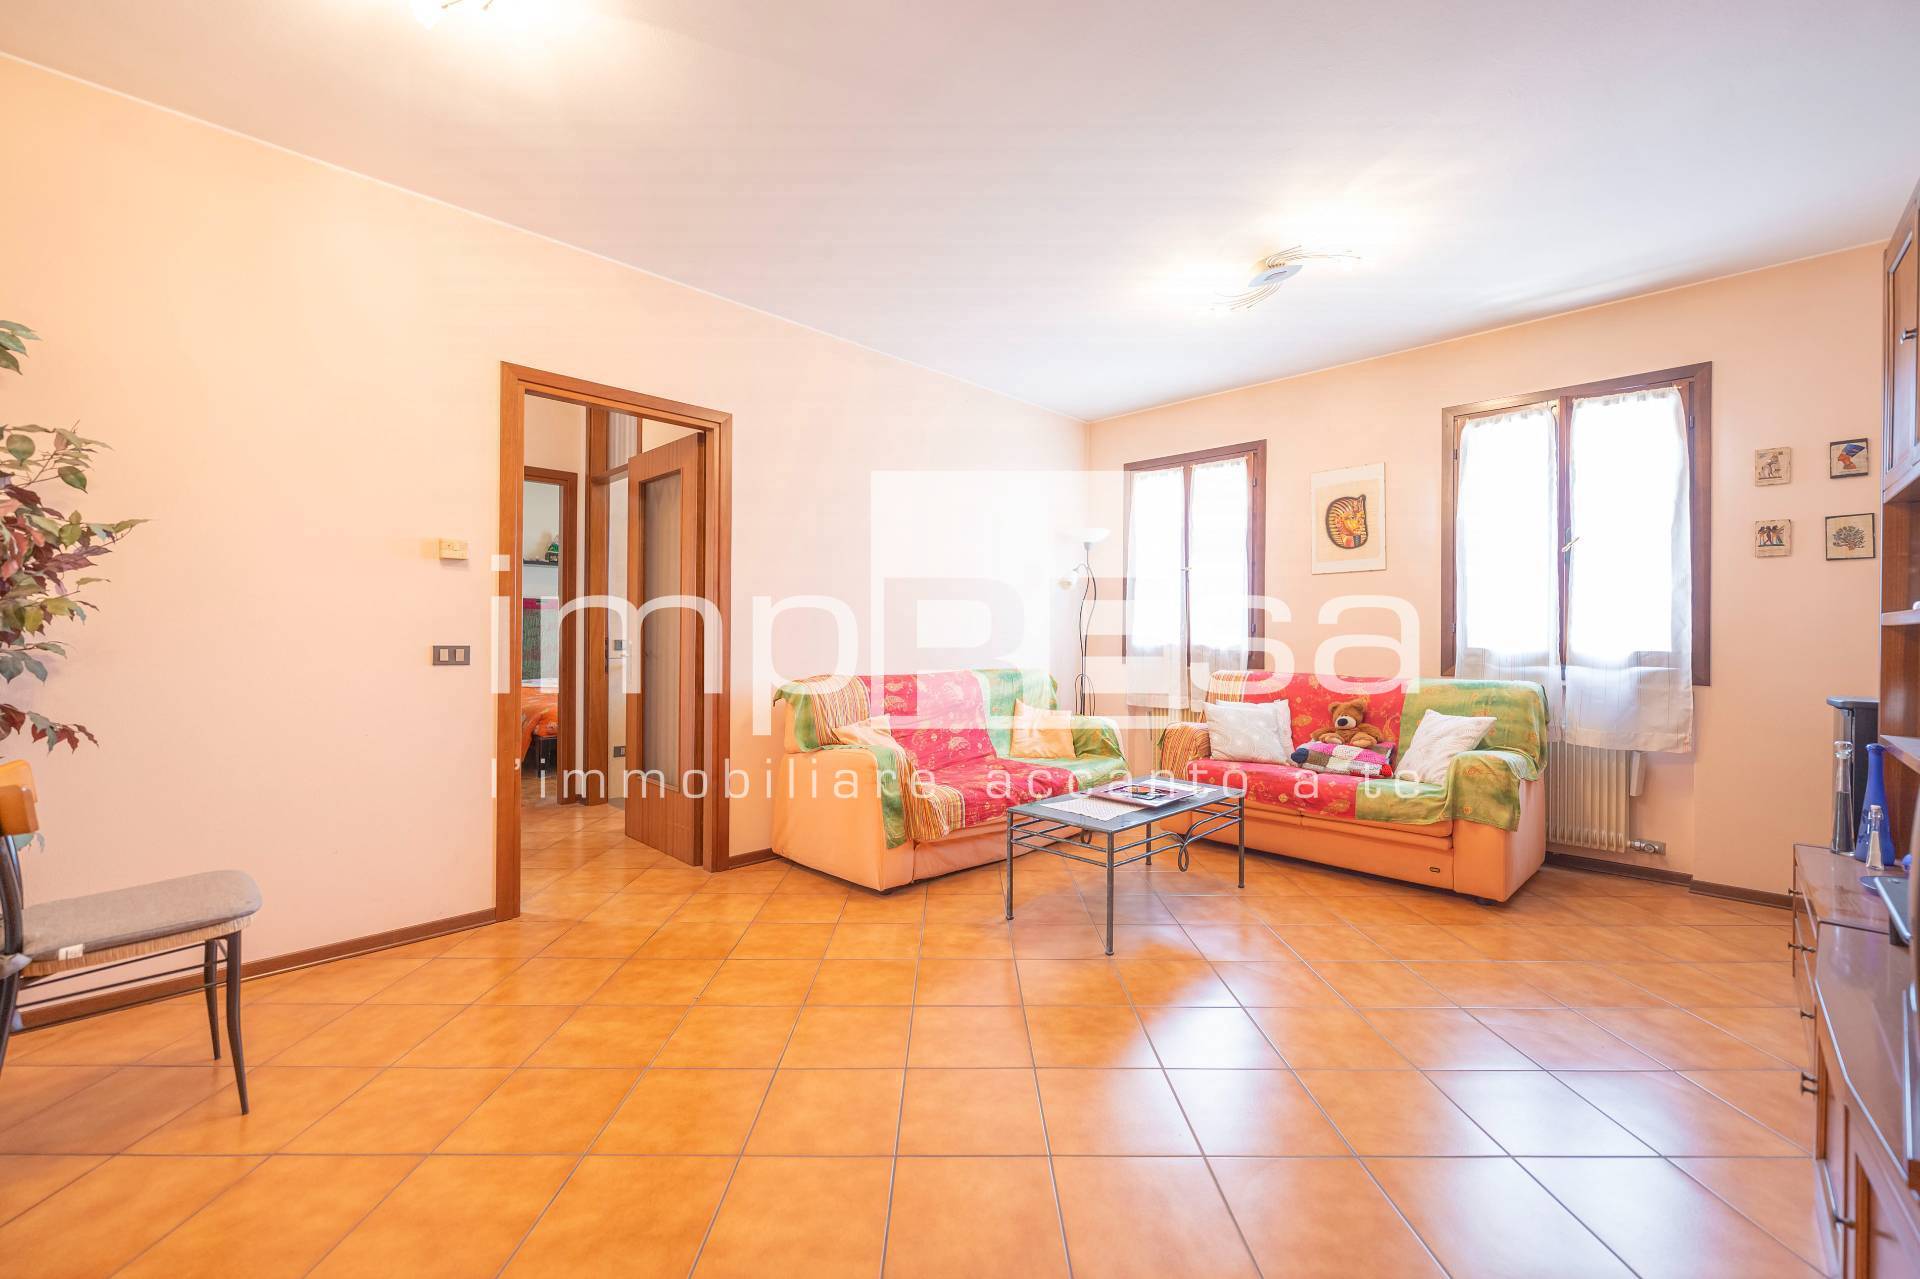 Appartamento in vendita a Chiarano, 5 locali, zona Località: FossaltaMaggiore, prezzo € 115.000 | PortaleAgenzieImmobiliari.it